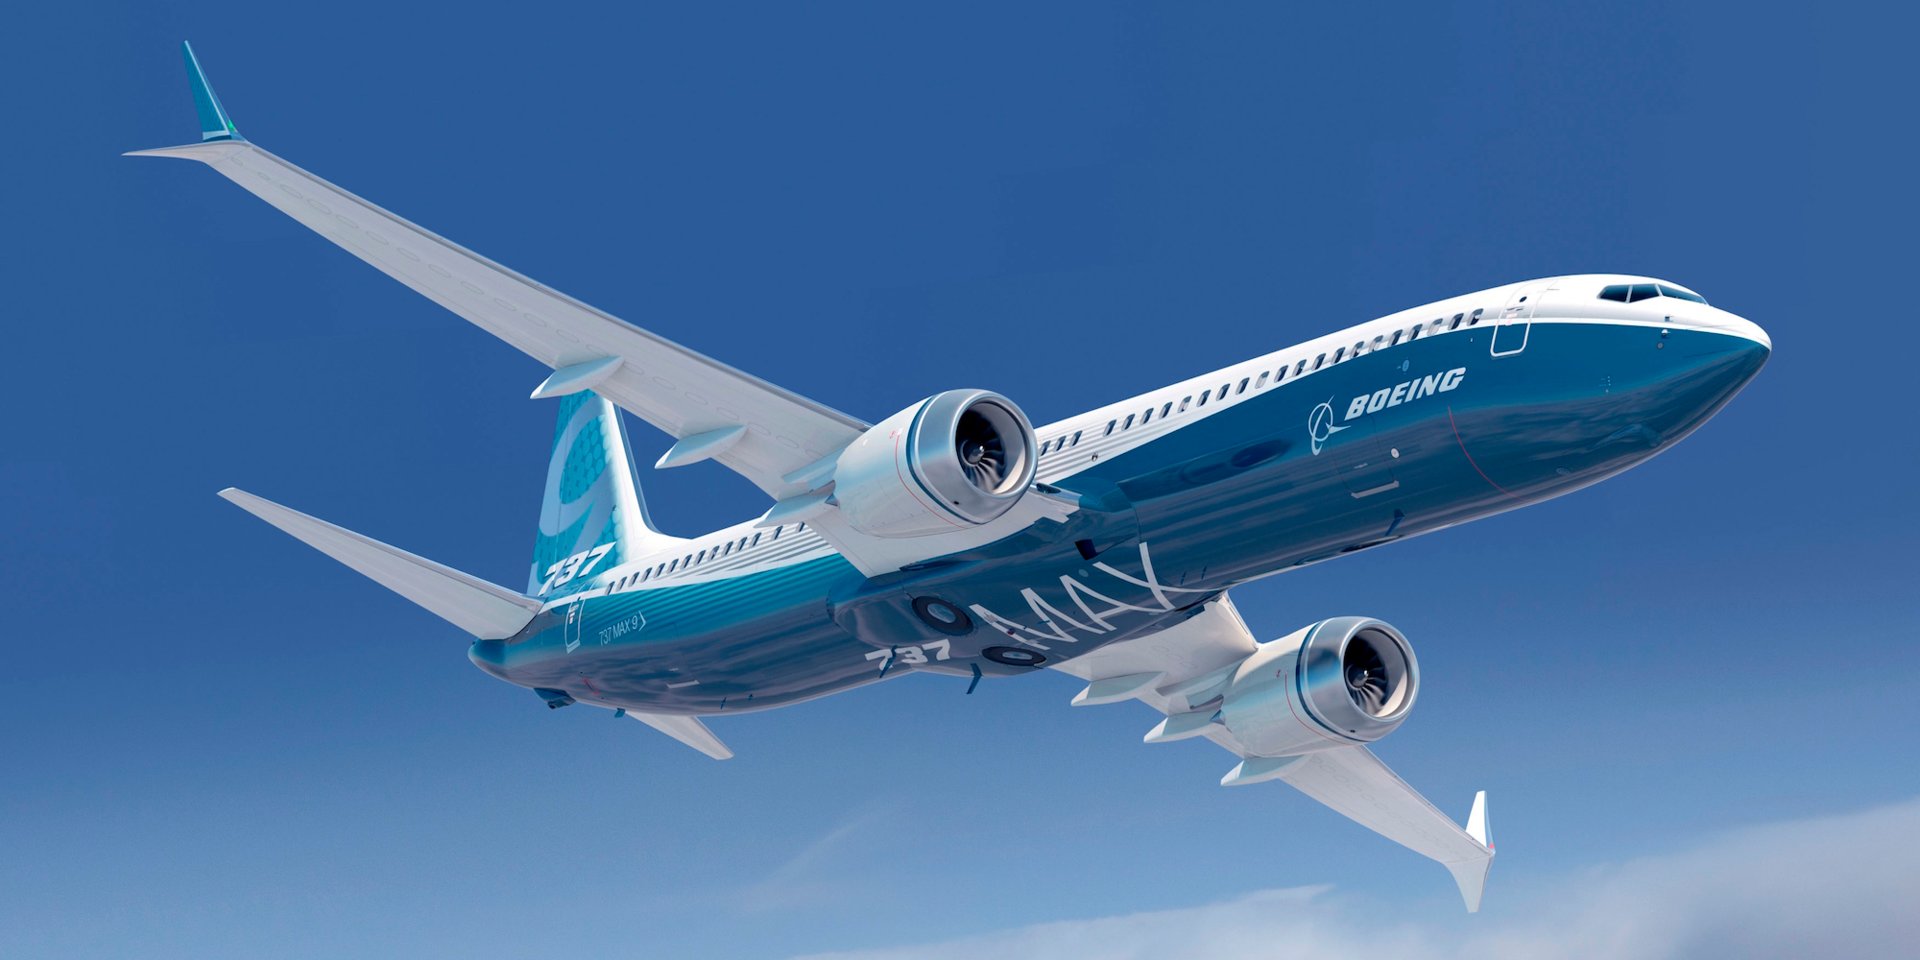 Авиакомпании предупредили о потерях в результате запрета на полеты Boeing 737 Max  